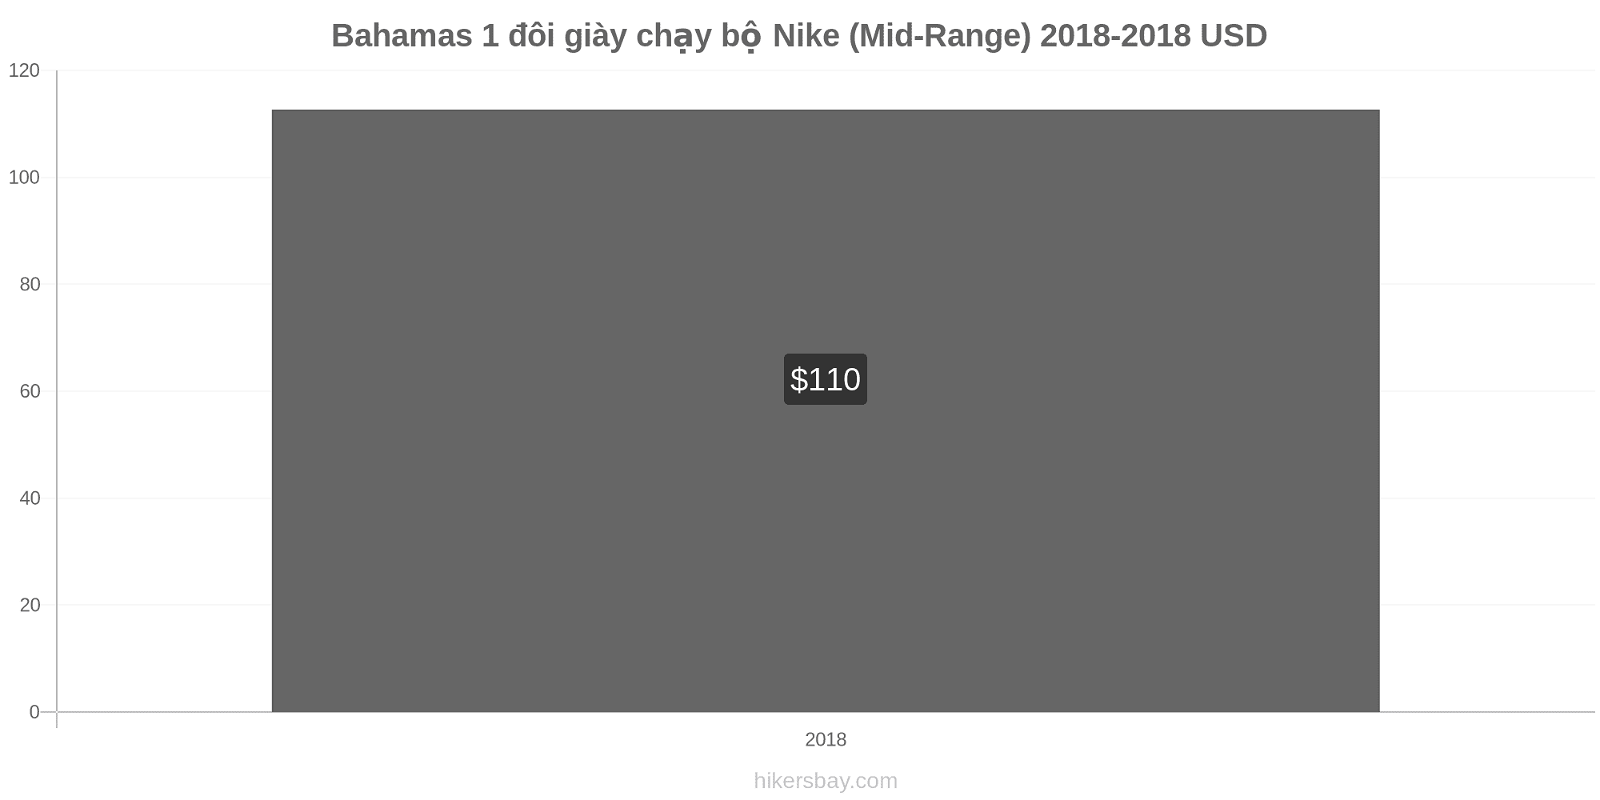 Bahamas thay đổi giá 1 đôi giày chạy bộ Nike (Mid-Range) hikersbay.com